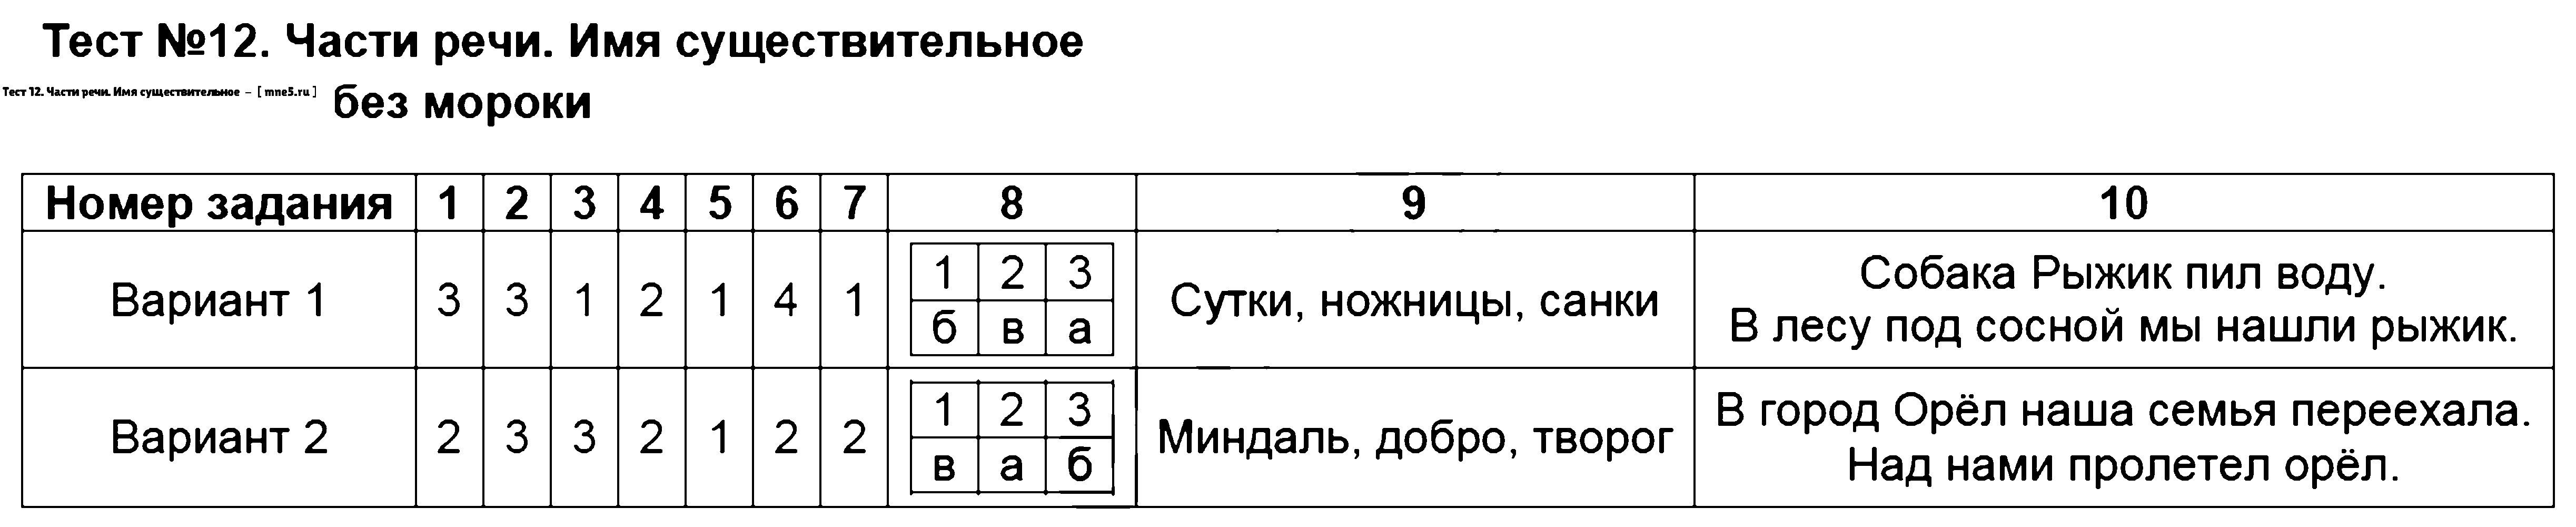 ГДЗ Русский язык 2 класс - Тест 12. Части речи. Имя существительное